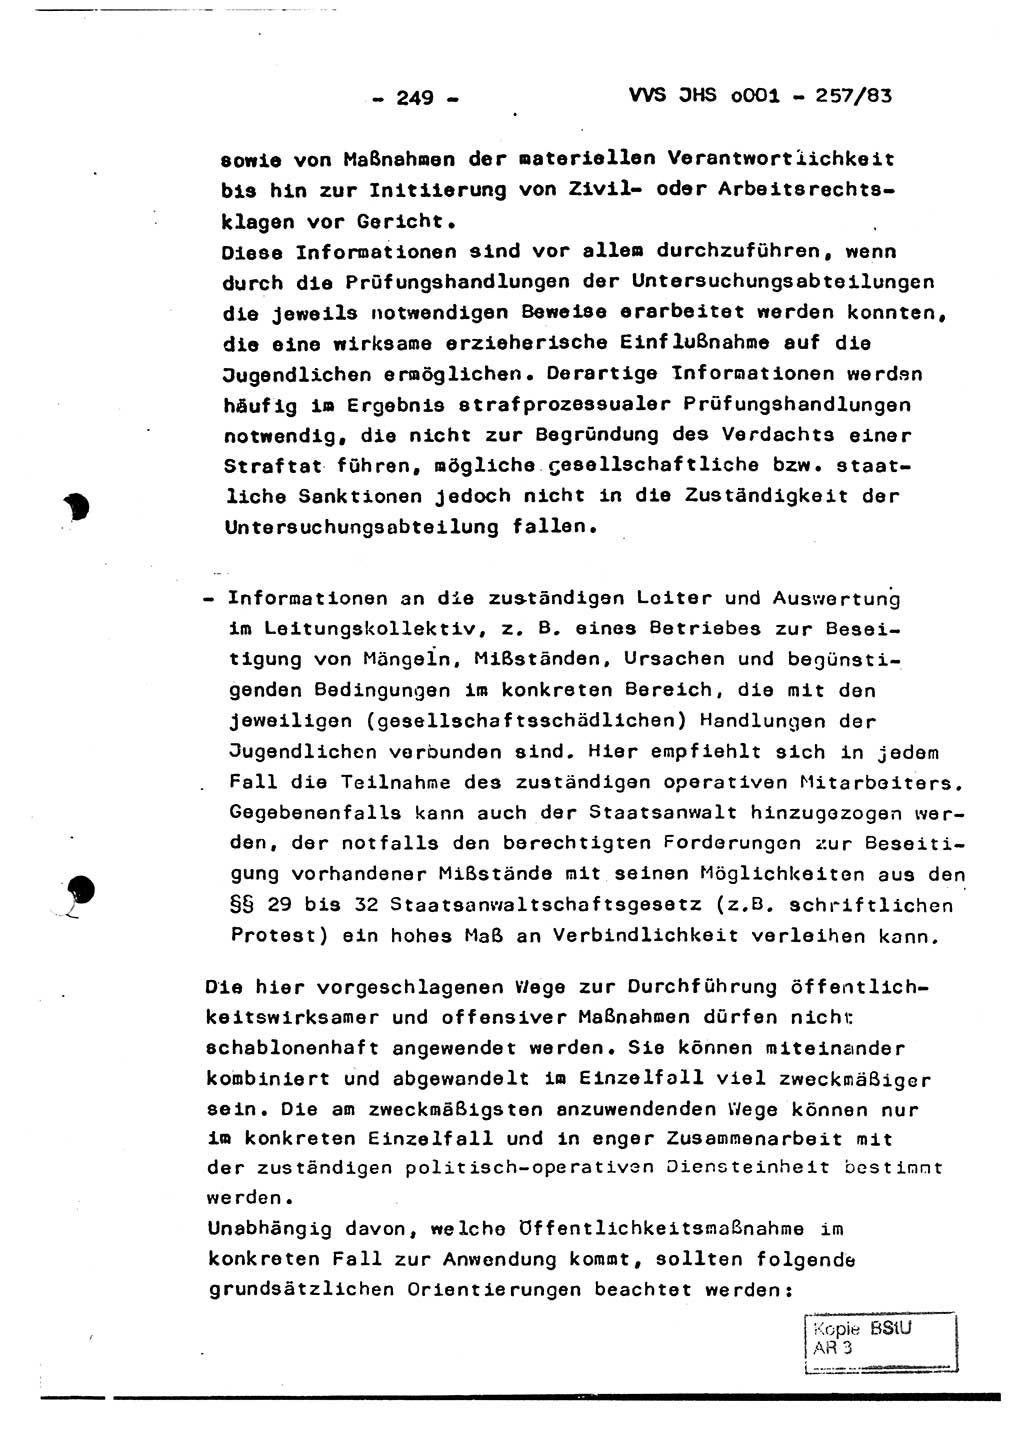 Dissertation, Oberst Helmut Lubas (BV Mdg.), Oberstleutnant Manfred Eschberger (HA IX), Oberleutnant Hans-Jürgen Ludwig (JHS), Ministerium für Staatssicherheit (MfS) [Deutsche Demokratische Republik (DDR)], Juristische Hochschule (JHS), Vertrauliche Verschlußsache (VVS) o001-257/83, Potsdam 1983, Seite 249 (Diss. MfS DDR JHS VVS o001-257/83 1983, S. 249)